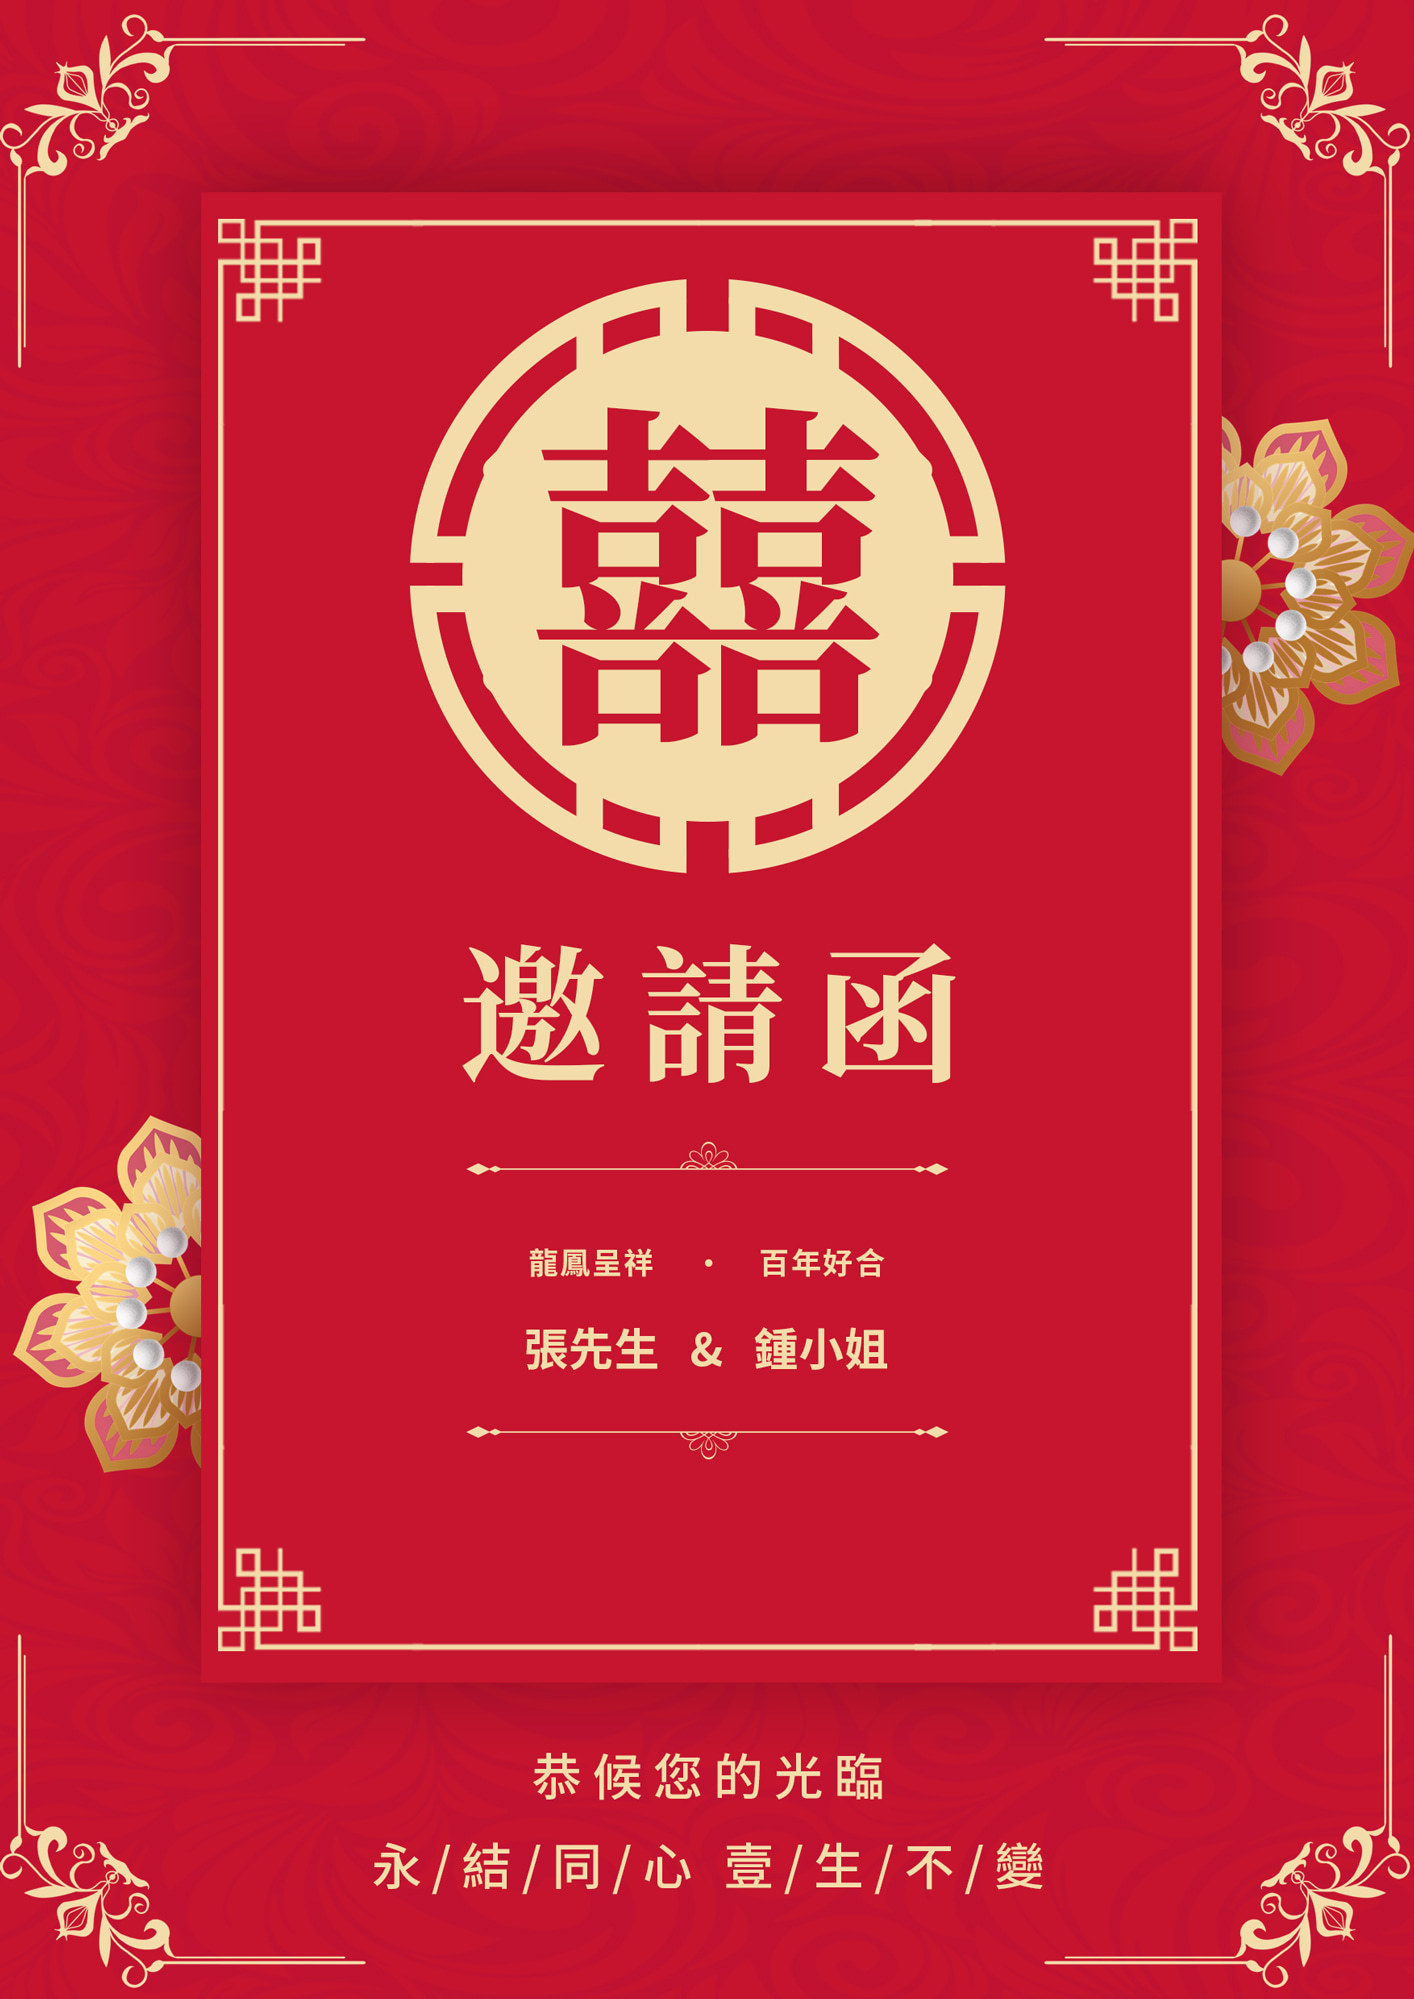 中国风格结婚邀请函图片